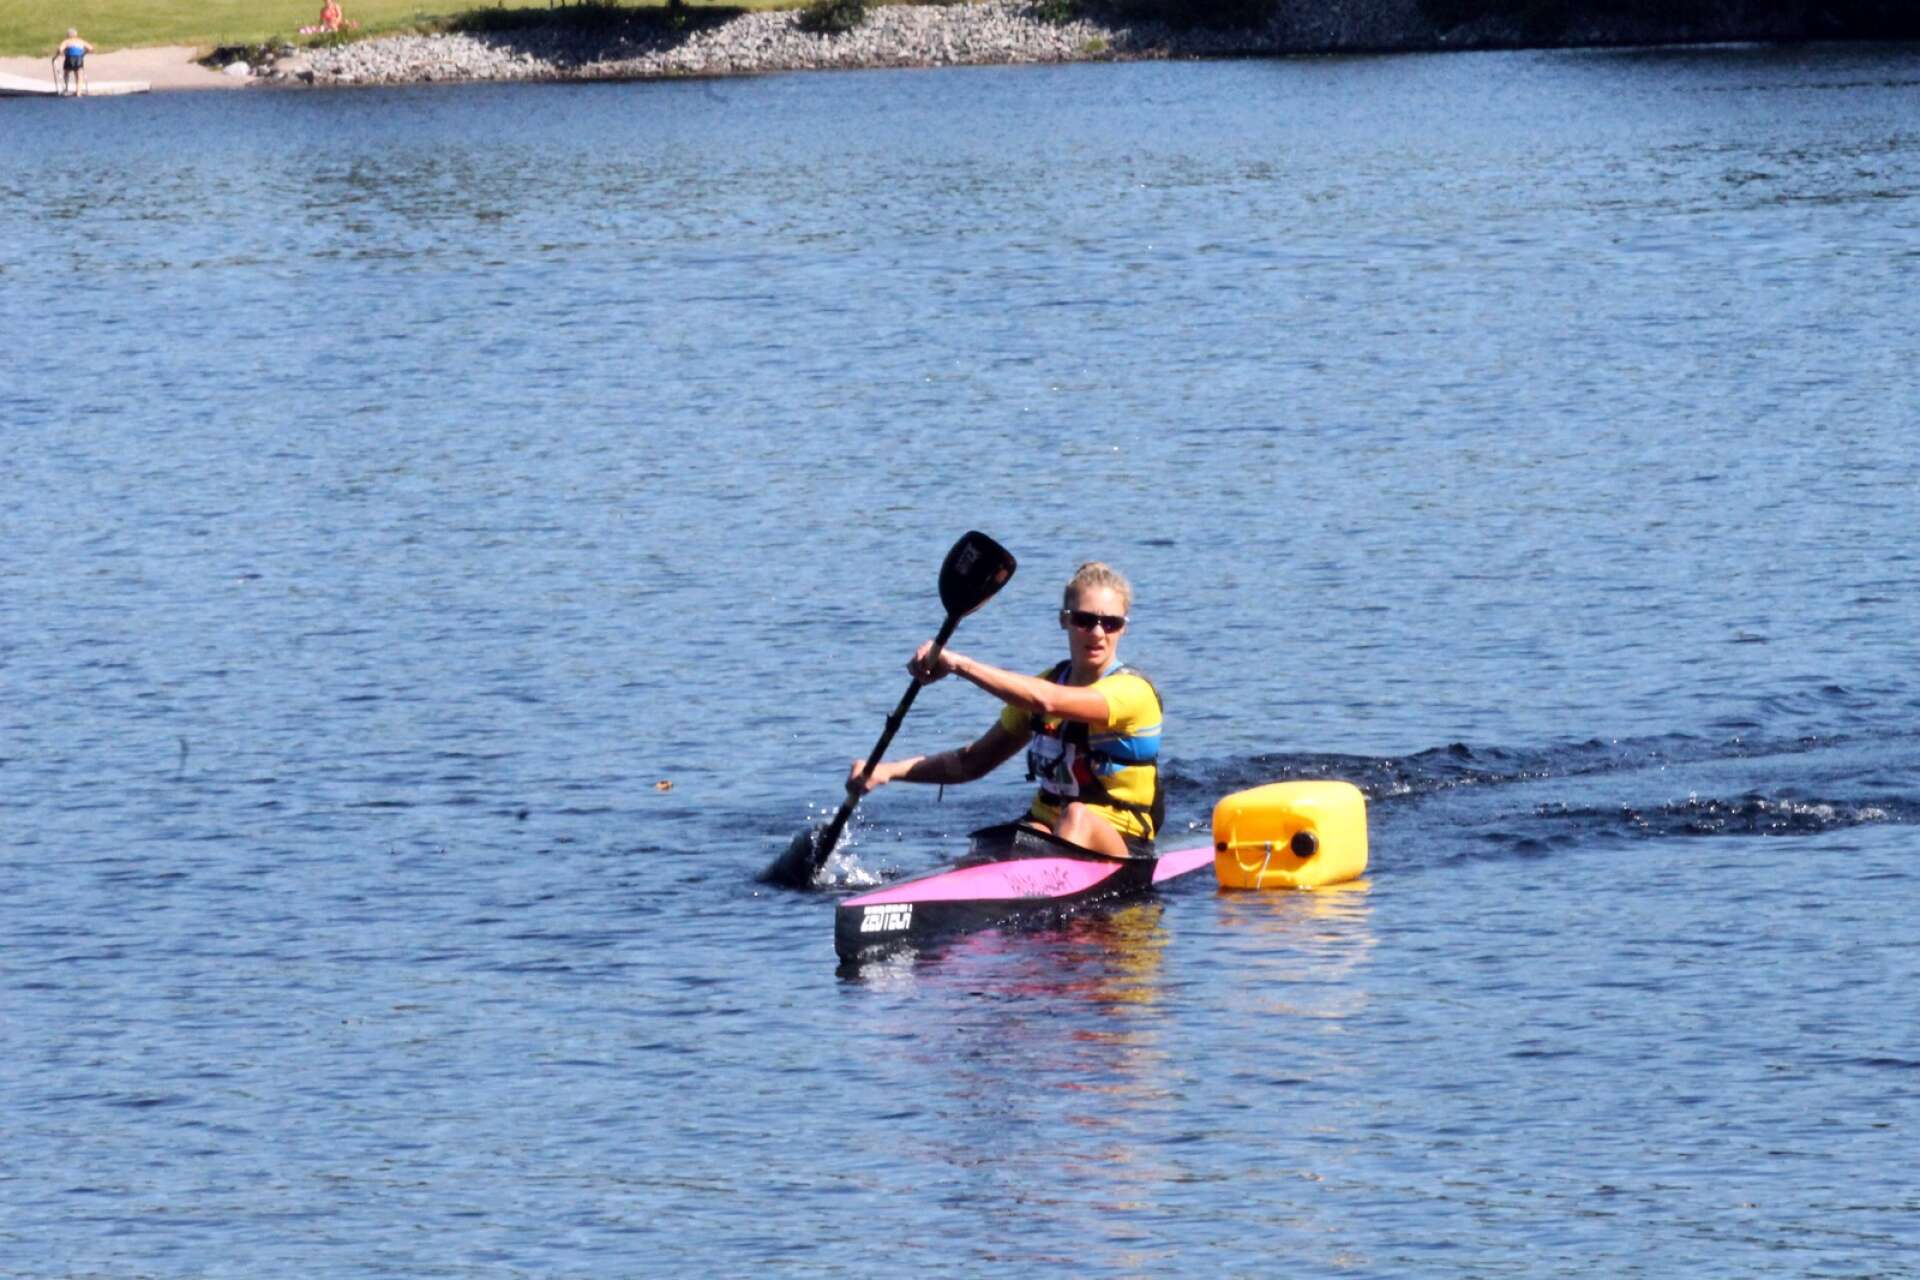 Dalsland Kanotmaraton 2022. Bengtsfors BOIS kanotstjärna Ania Zagorska tar sina sista paddeltag innan hon springer i mål som segare i K1 dam.